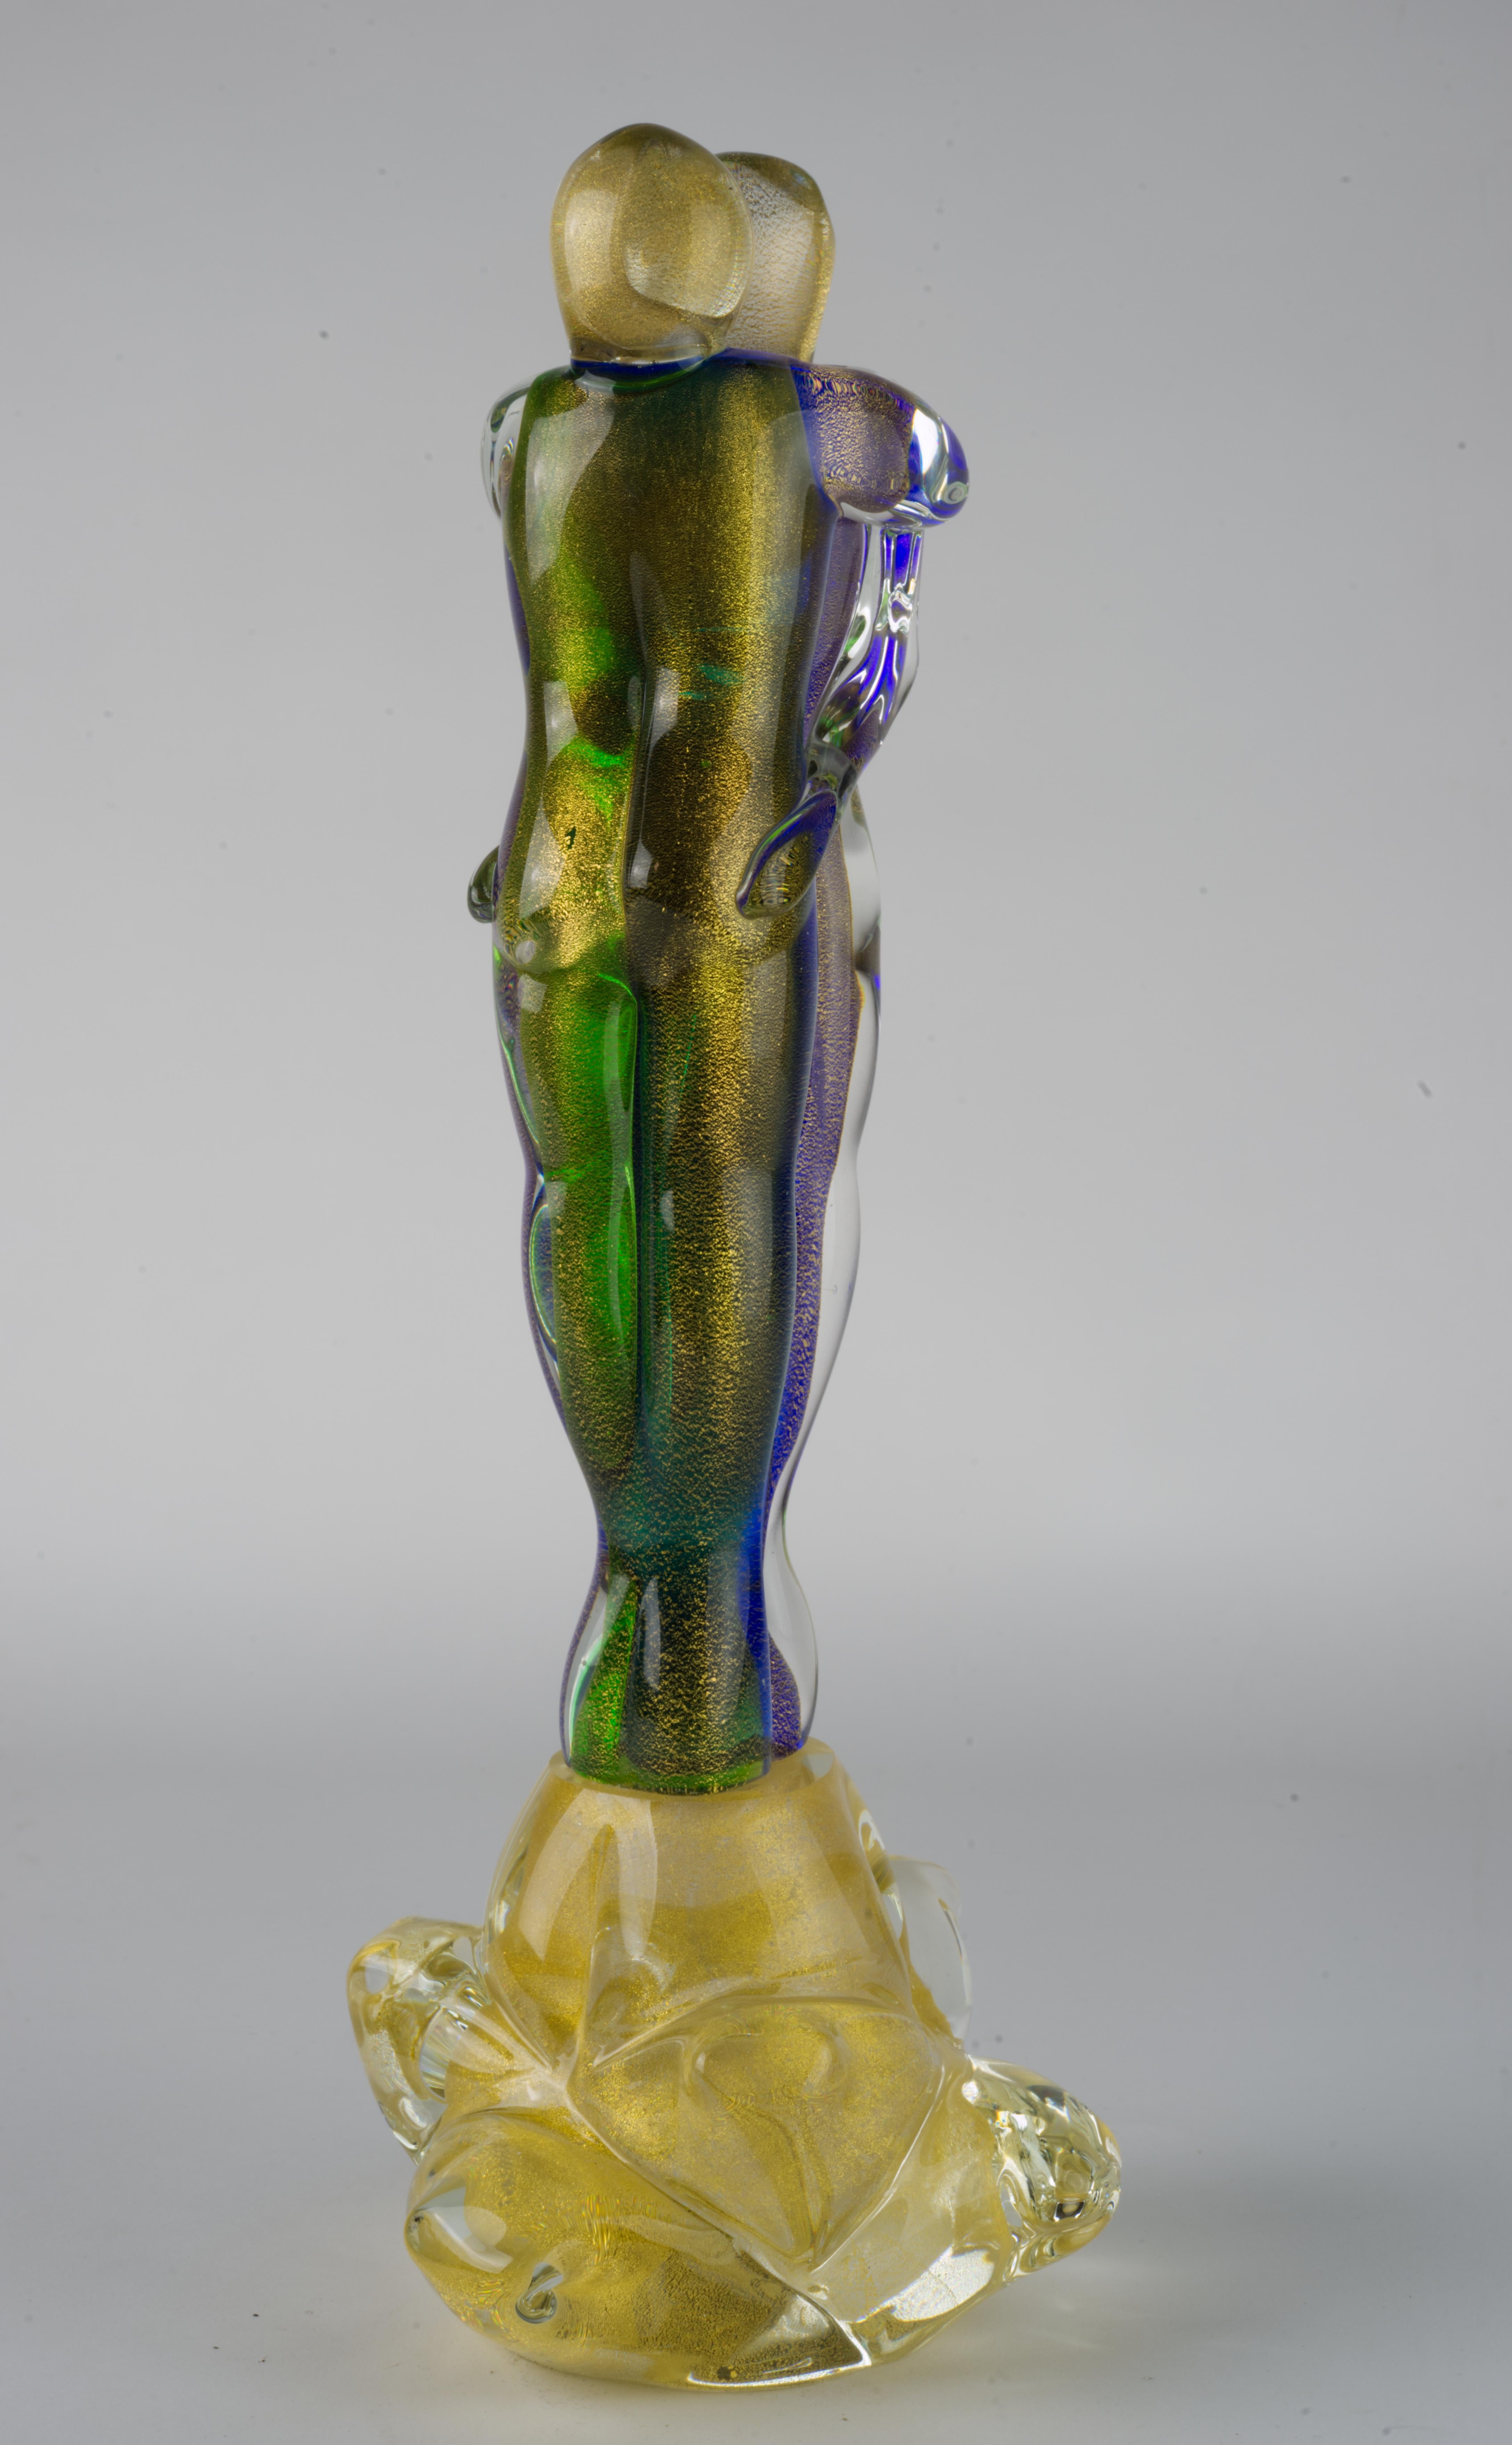 Abstrakte Murano-Glasskulptur von zwei Liebenden, die sich umarmen, aus grünem, violettem und klarem Glas mit Goldflockeneinschlüssen, umhüllt von klarem Glas in Sommerso-Technik. Die beiden Figuren werden von einem figurativen Sockel aus Klarglas